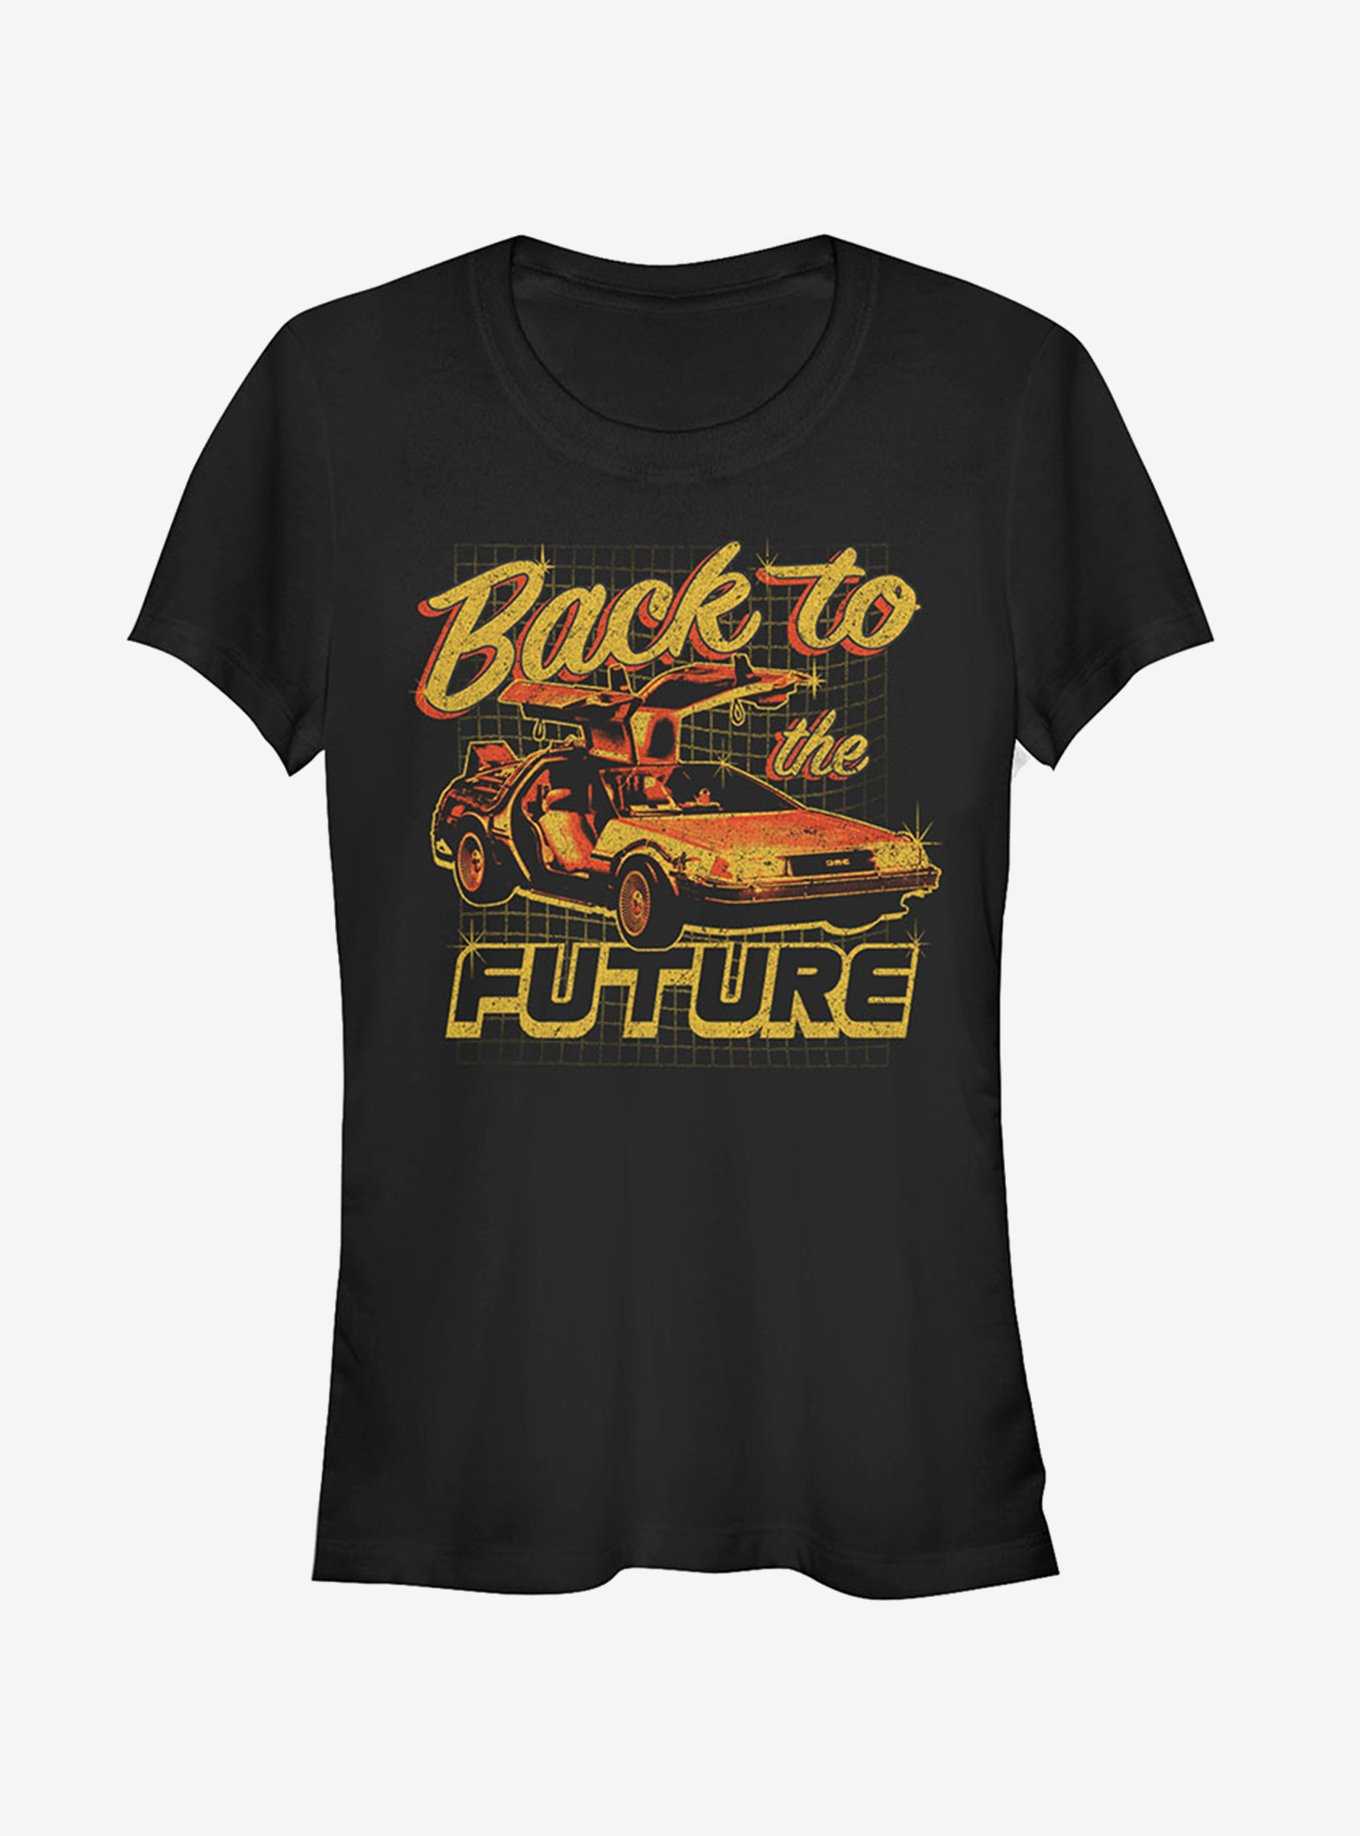 DeLorean Schematic Print Girls T-Shirt, , hi-res